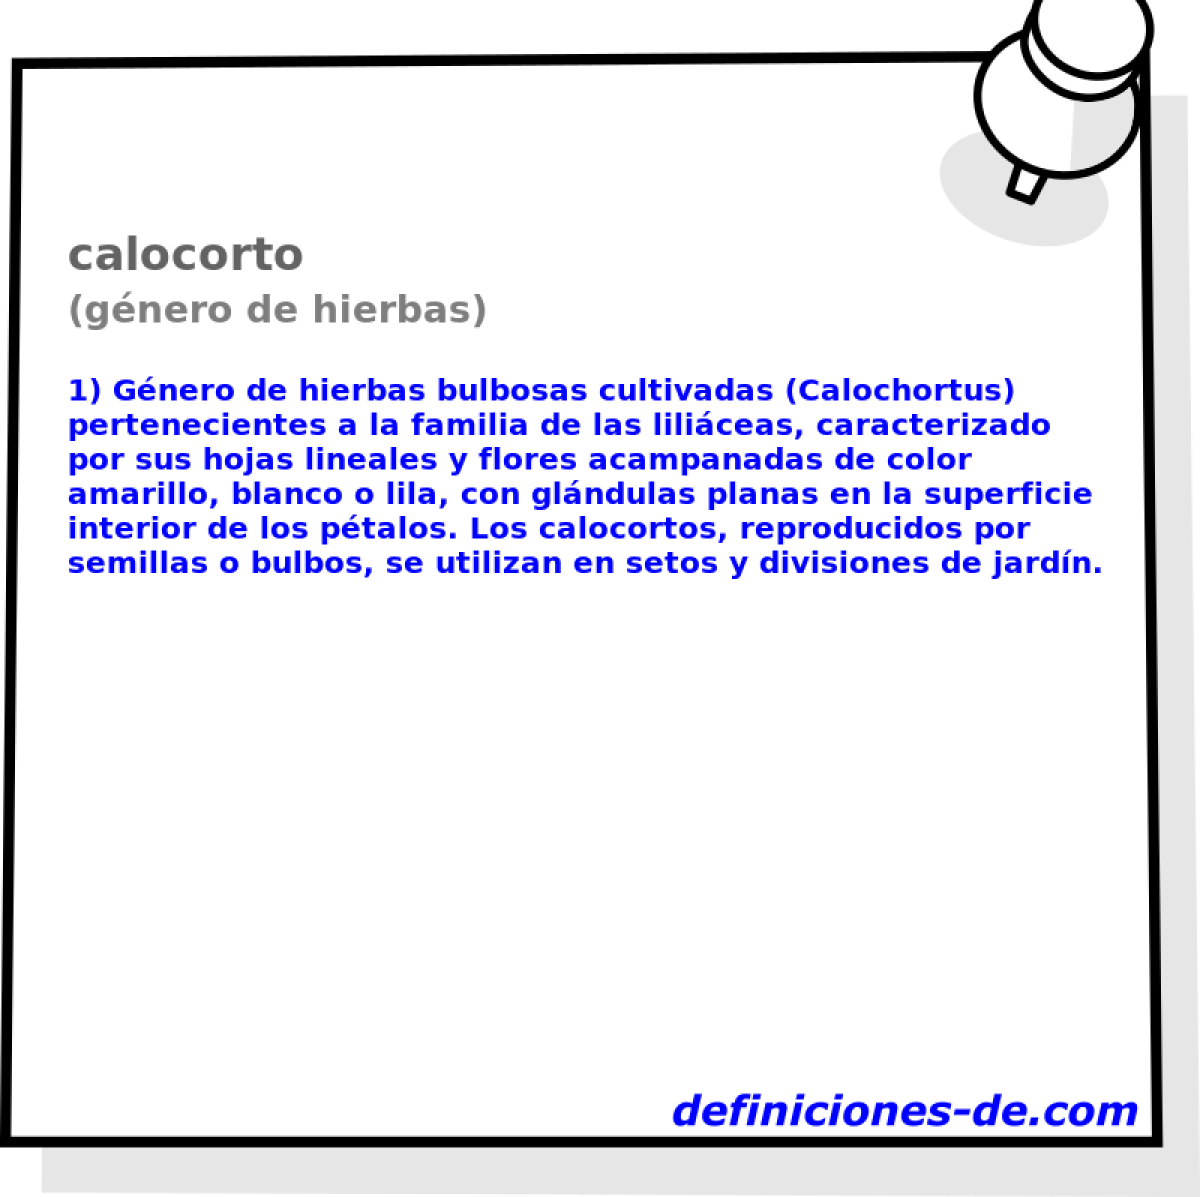 calocorto (gnero de hierbas)